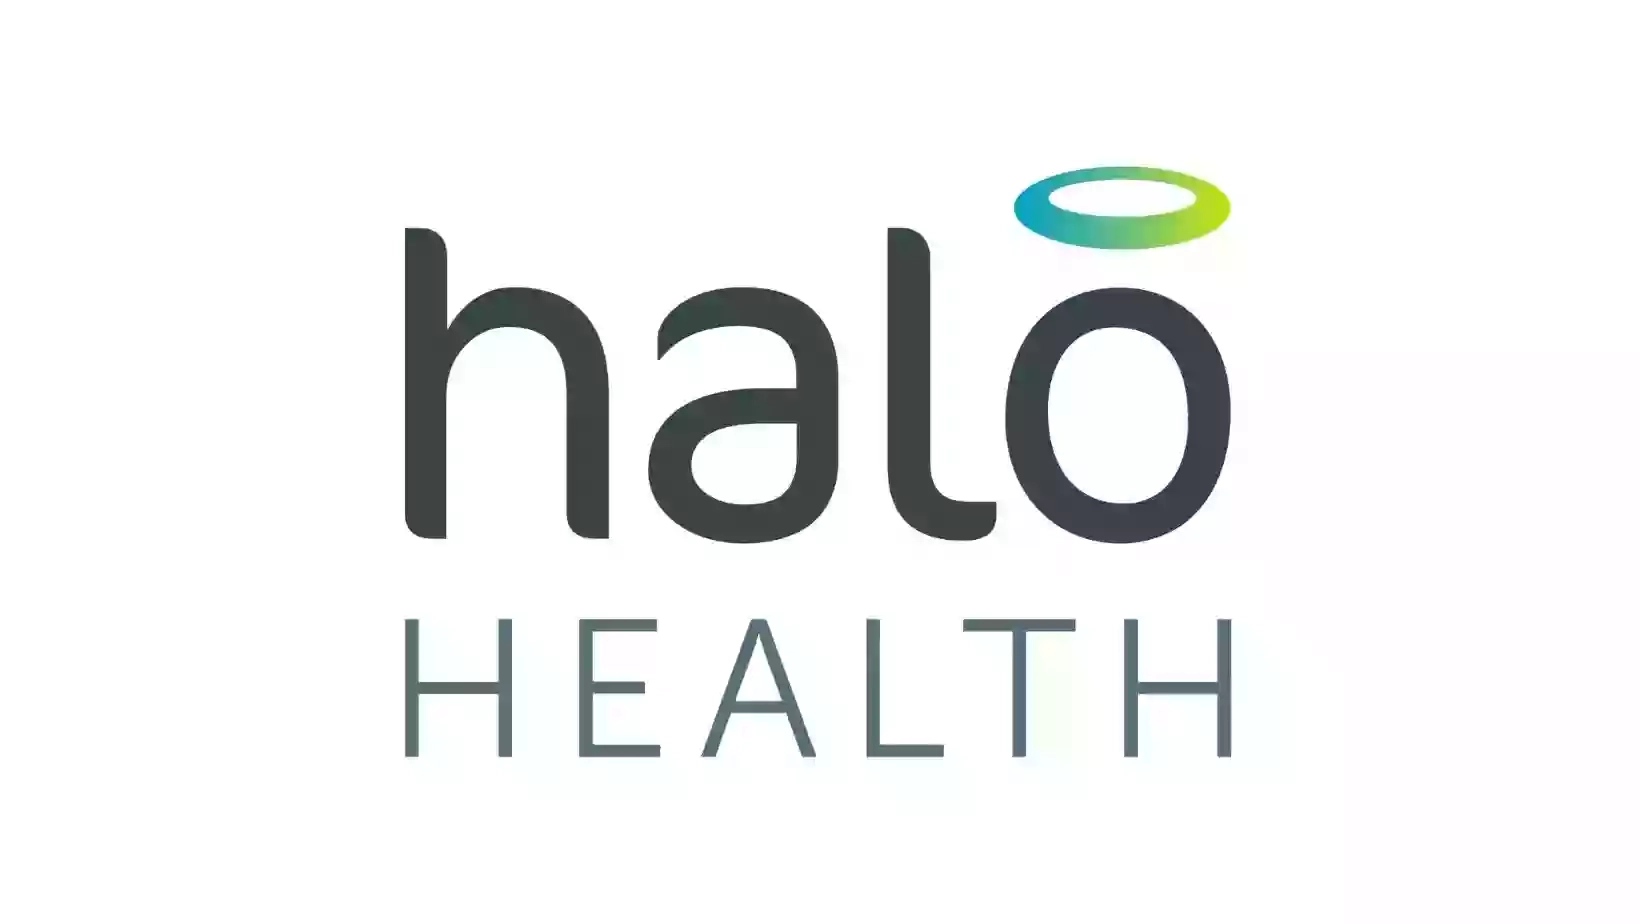 Halo Health